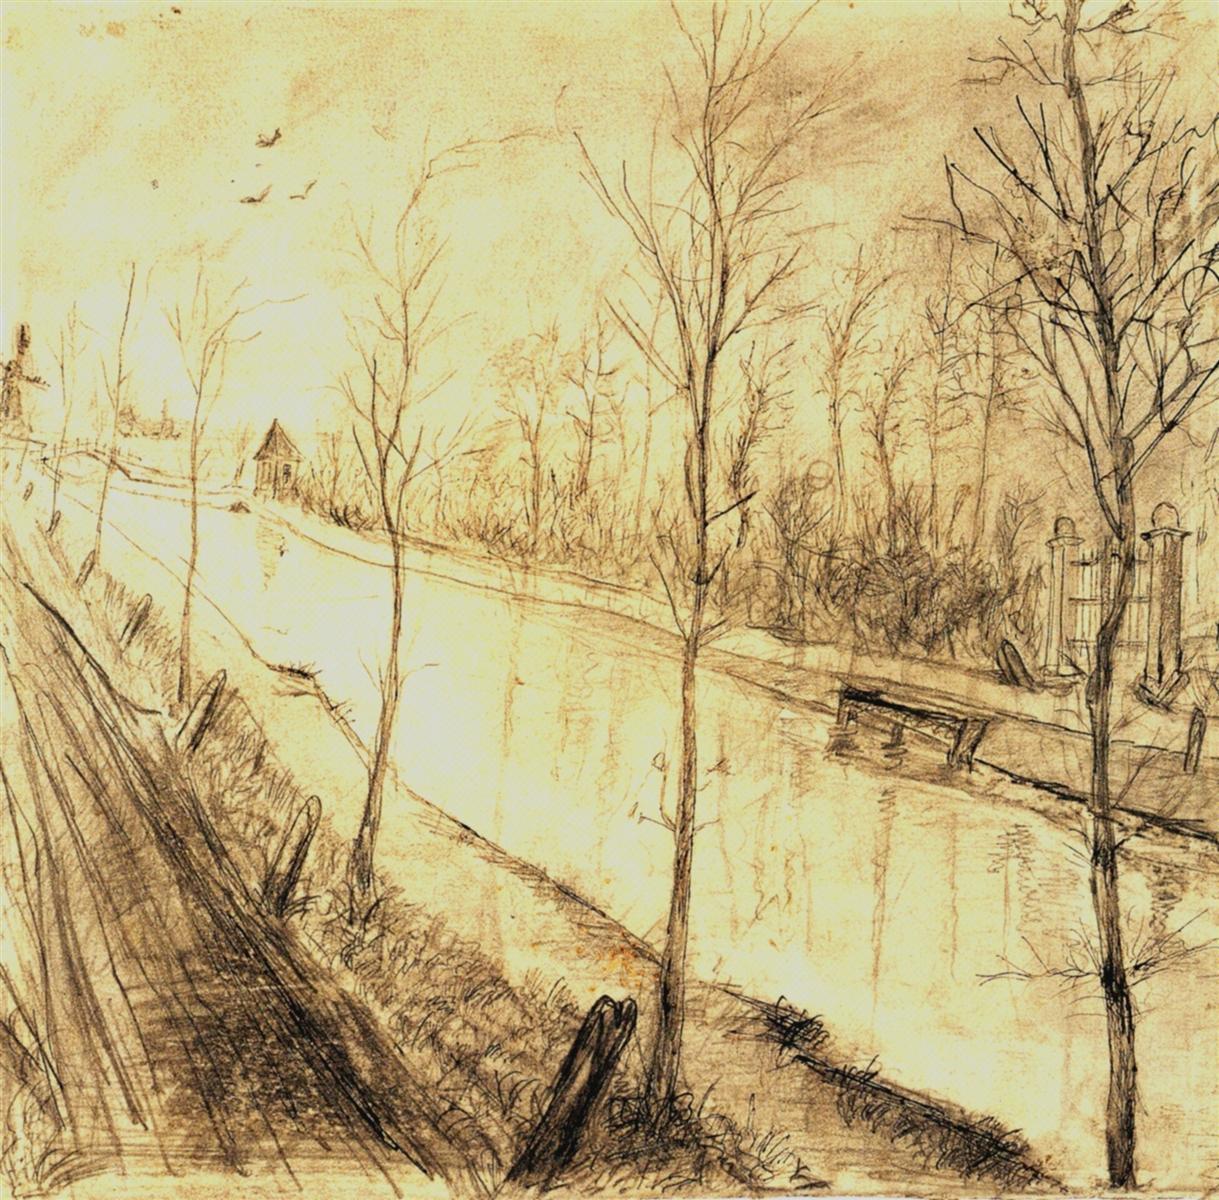 Canale (1873), Van Gogh